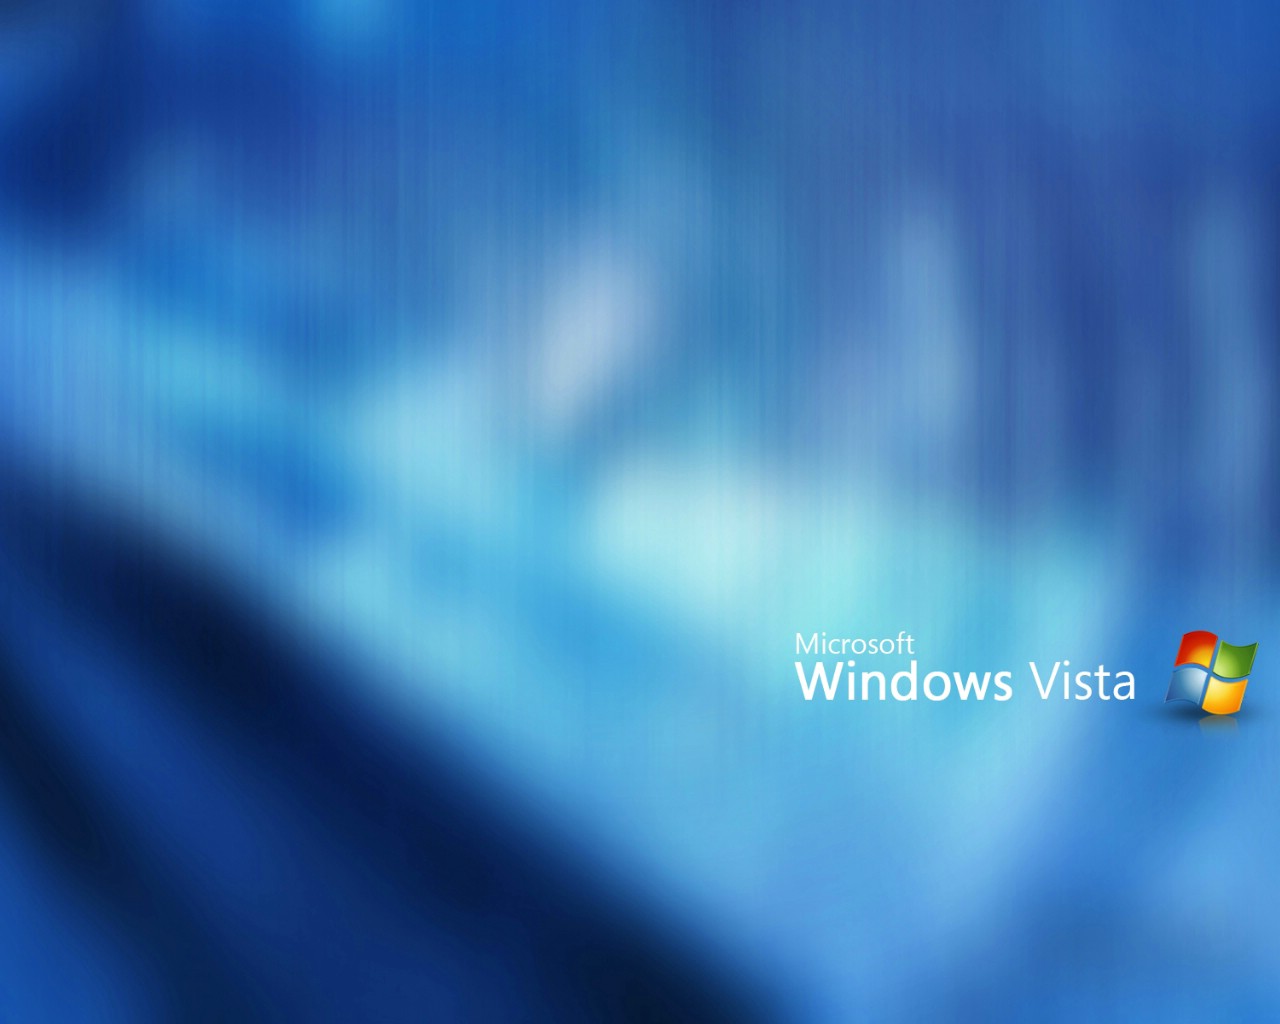 壁纸1280x1024Windows Vista超正壁纸集壁纸 Windows Vista超正壁纸集壁纸 Windows Vista超正壁纸集图片 Windows Vista超正壁纸集素材 其他壁纸 其他图库 其他图片素材桌面壁纸